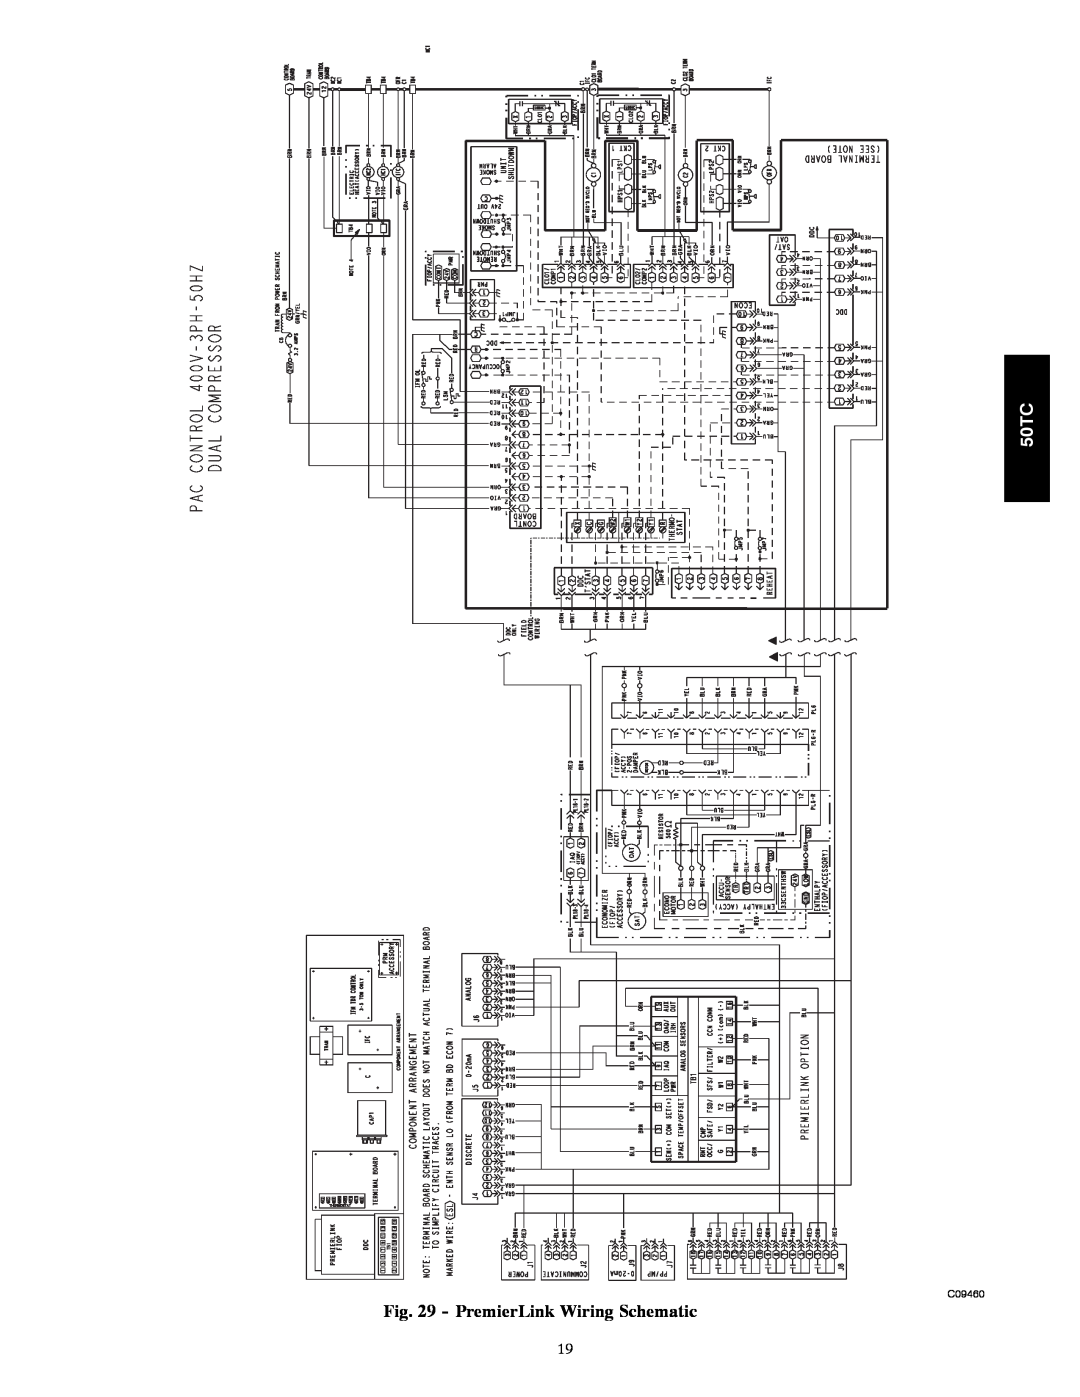 Carrier 50TC installation instructions PremierLink Wiring Schematic, C09460 